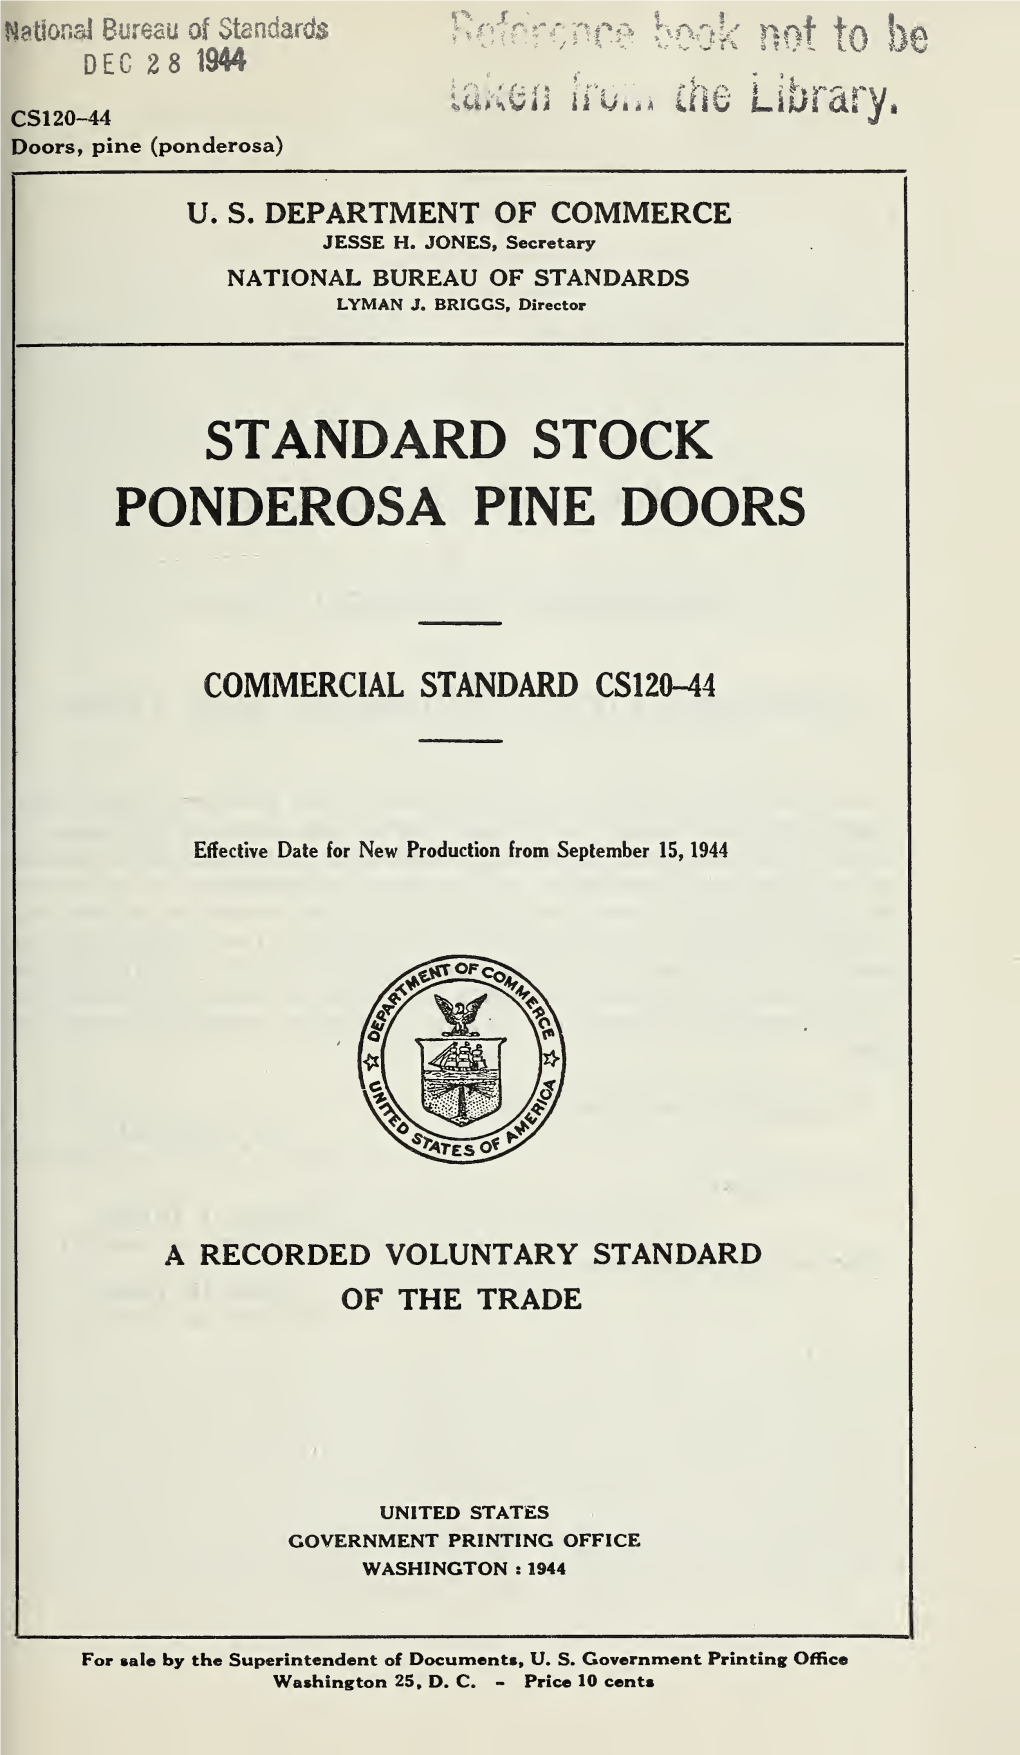 Standard Stock Ponderosa Pine Doors